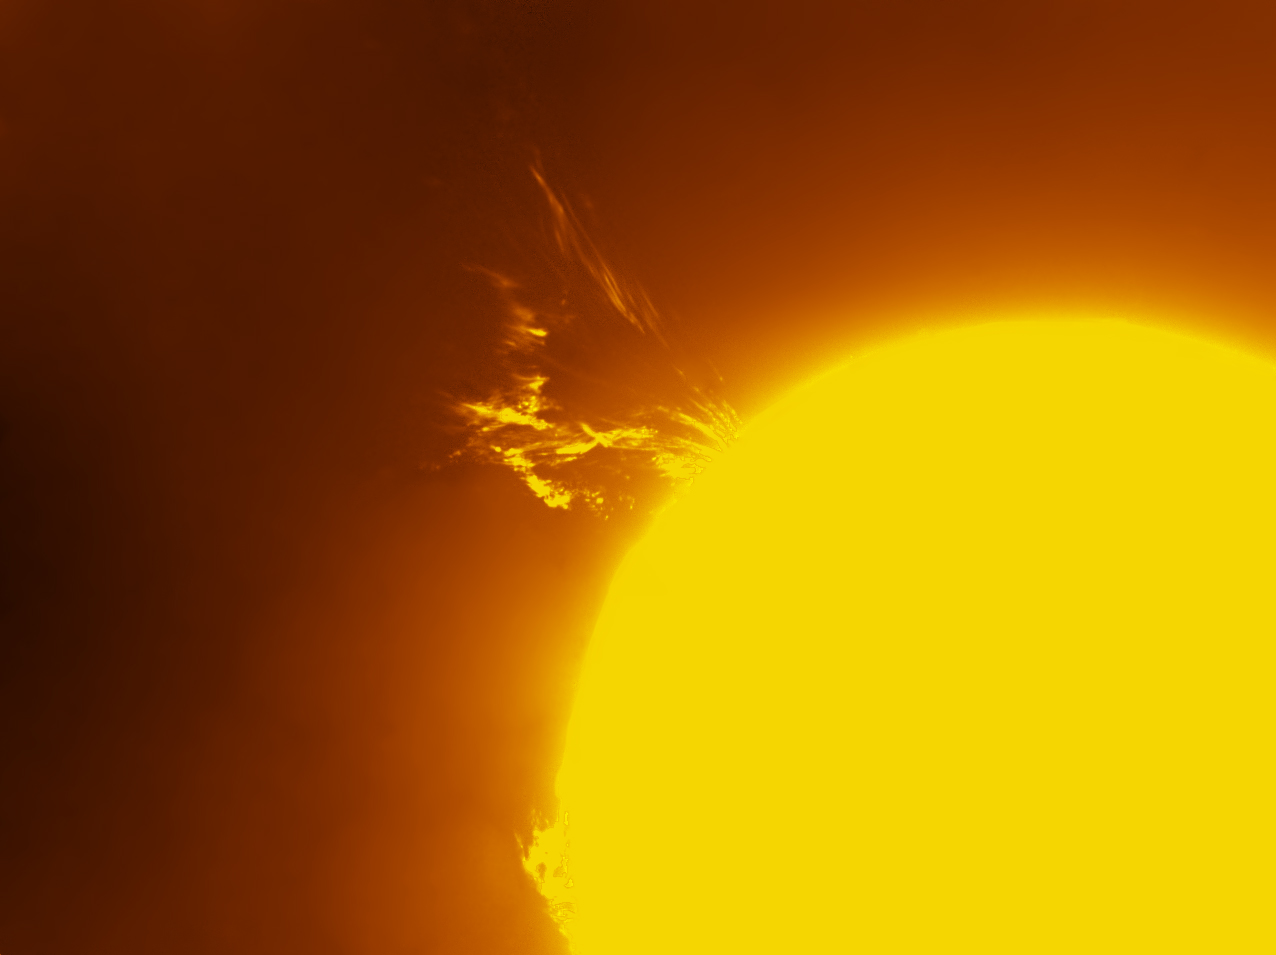 L'éruption solaire du 16 avril photographiée par un télescope amateur depuis la Californie. © Jim Lafferty/Spaceweather.com
